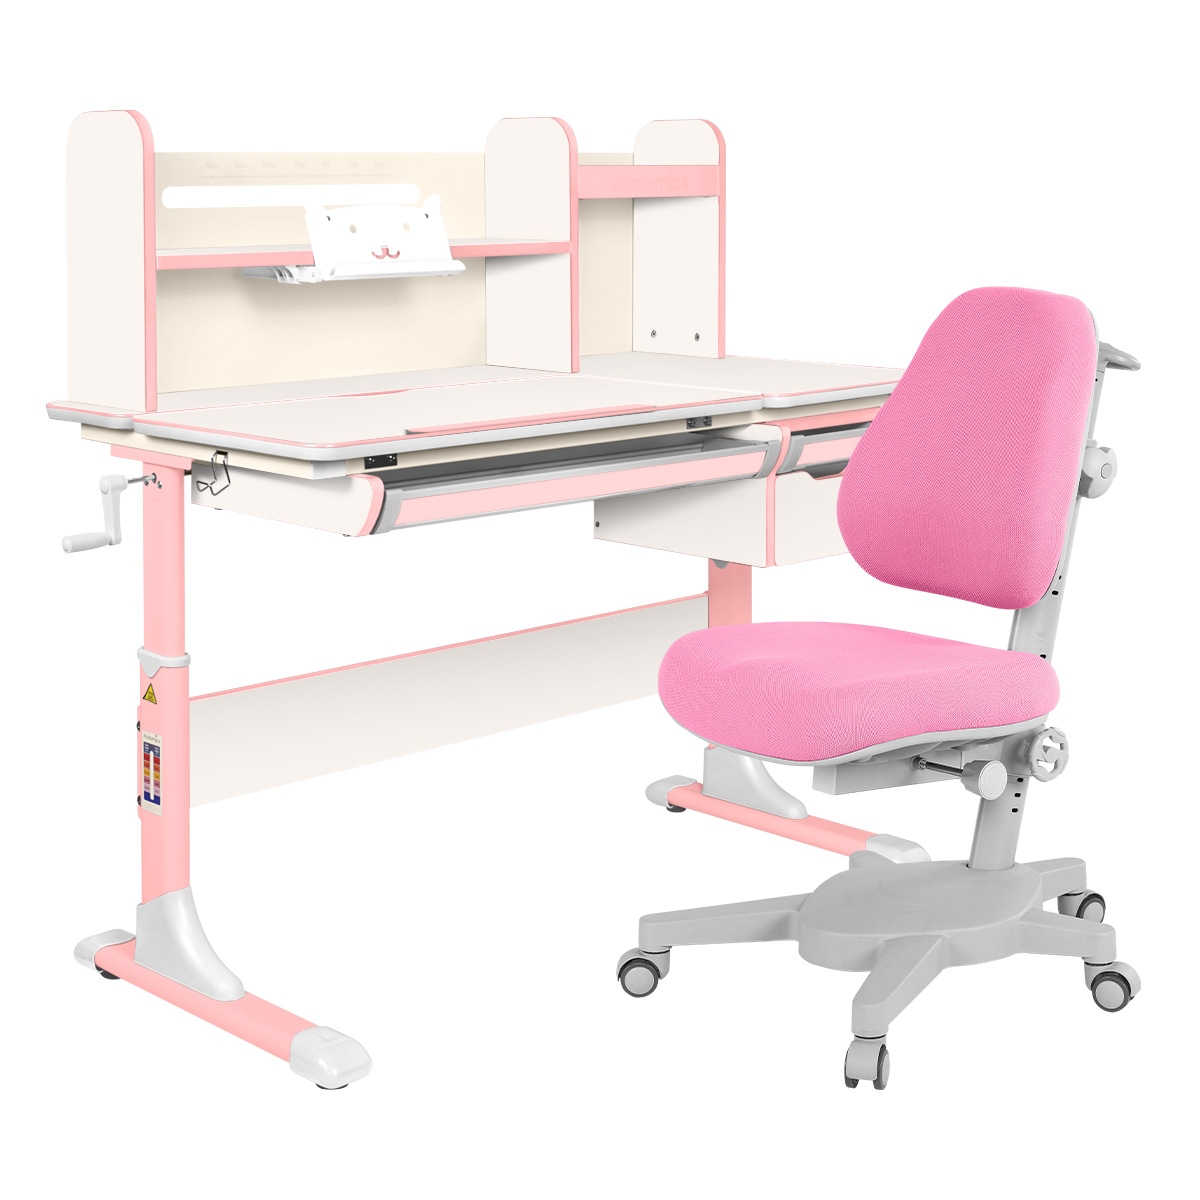 Комплект Anatomica парта Genius белый/розовый с розовым креслом Armata комплект anatomica парта genius клен серый с зеленым креслом armata